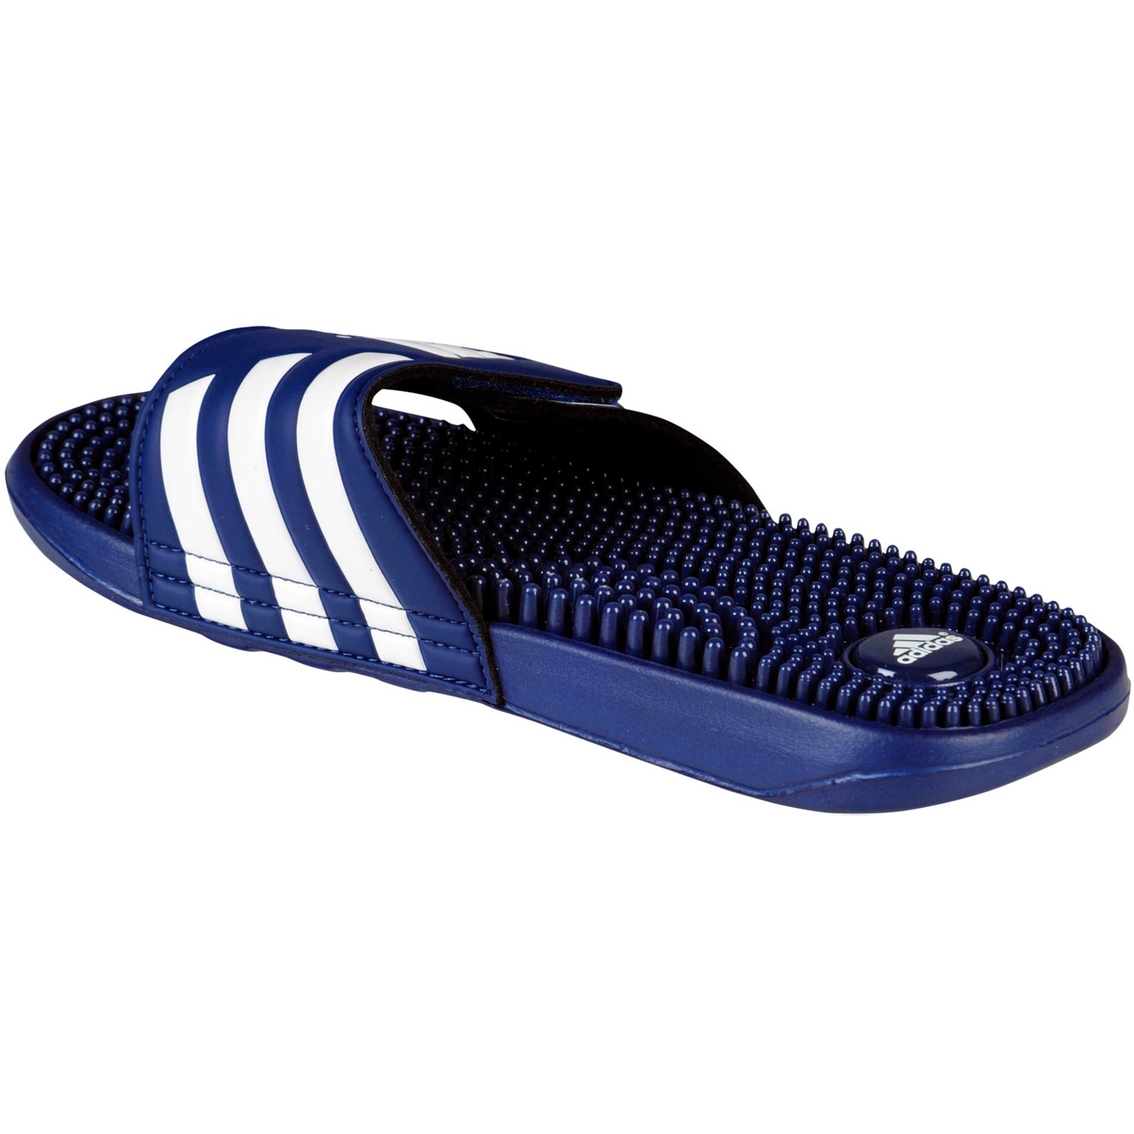 Adidas Men's Adissage Massage Sandals | Sandals & Flip Flops | Shoes ...